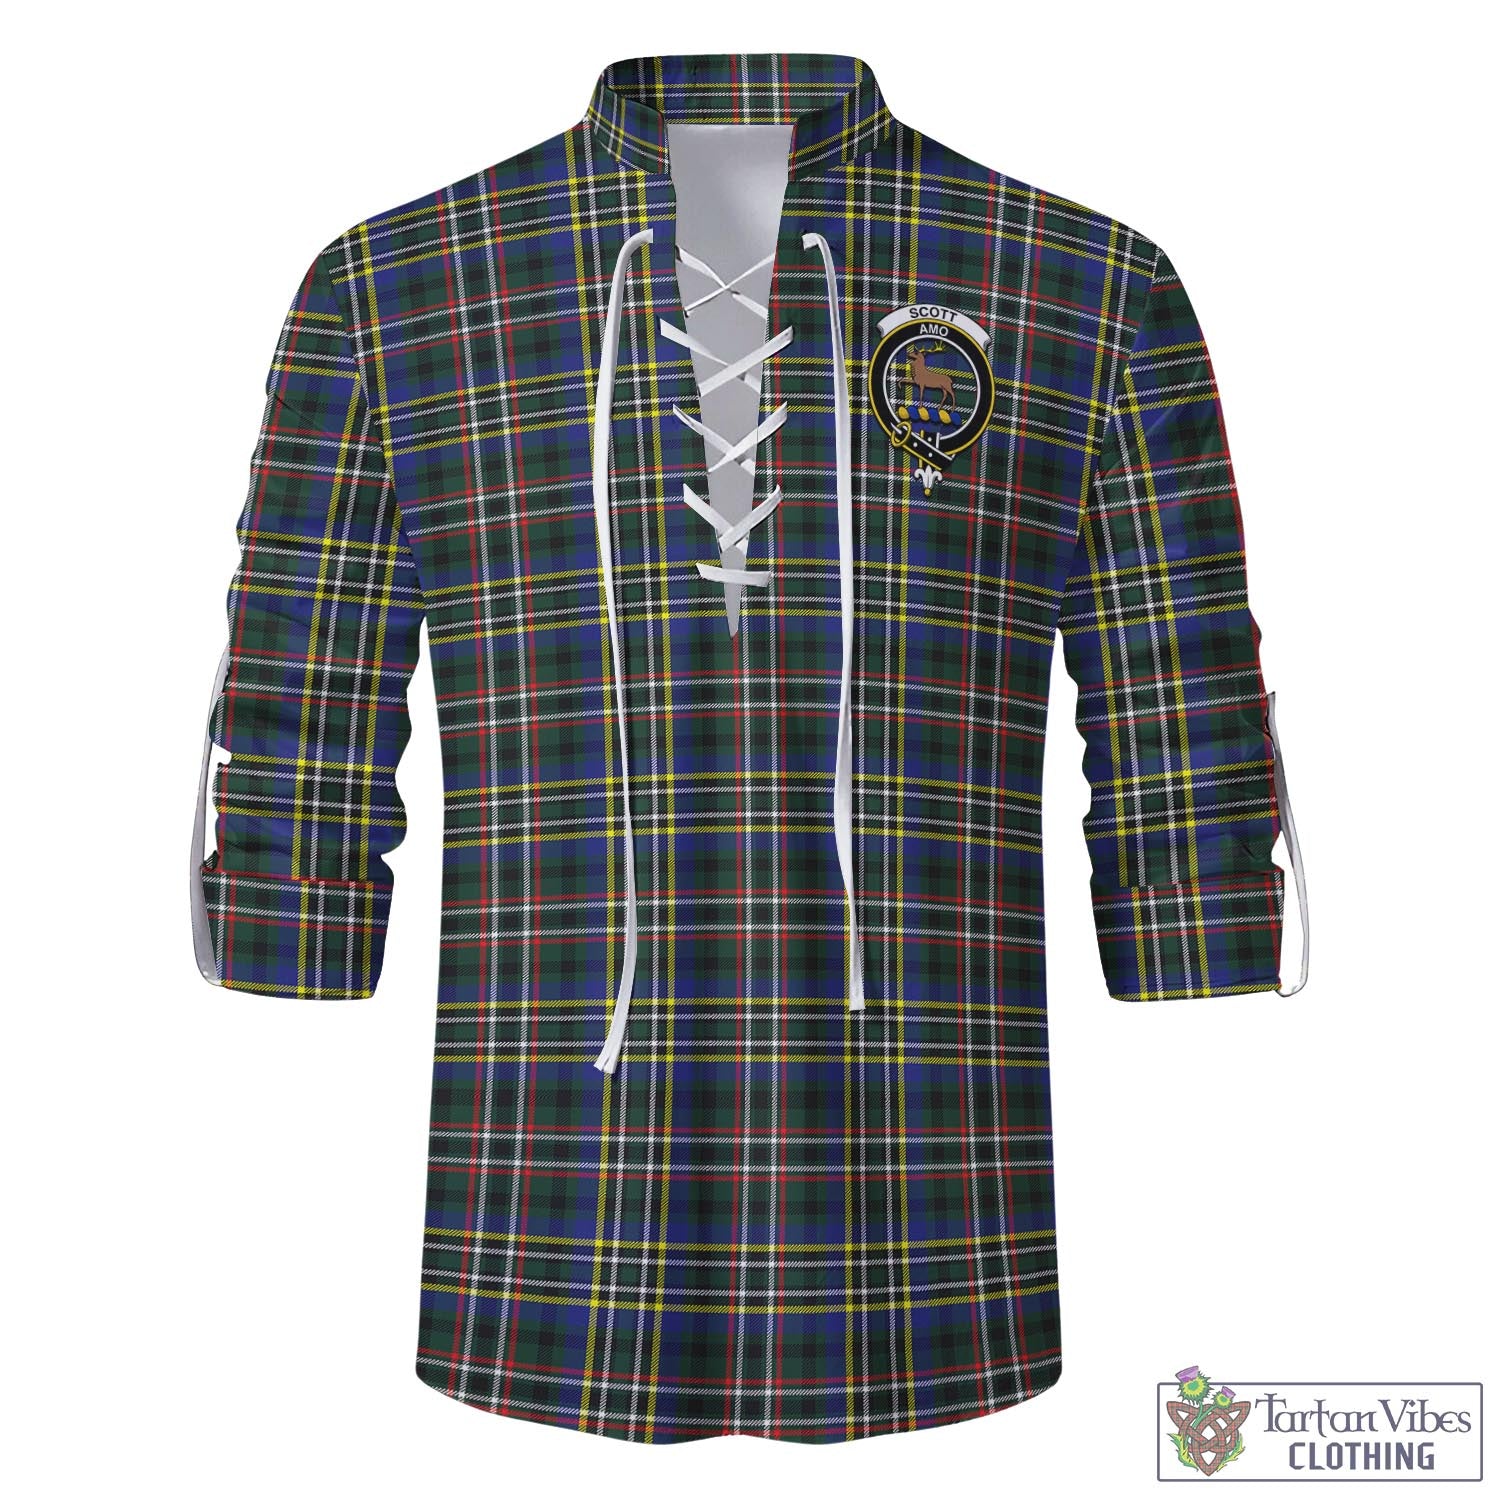 Tartan Vibes Clothing Scott Green Modern Tartan Men's Scottish Traditional Jacobite Ghillie Kilt Shirt with Family Crest